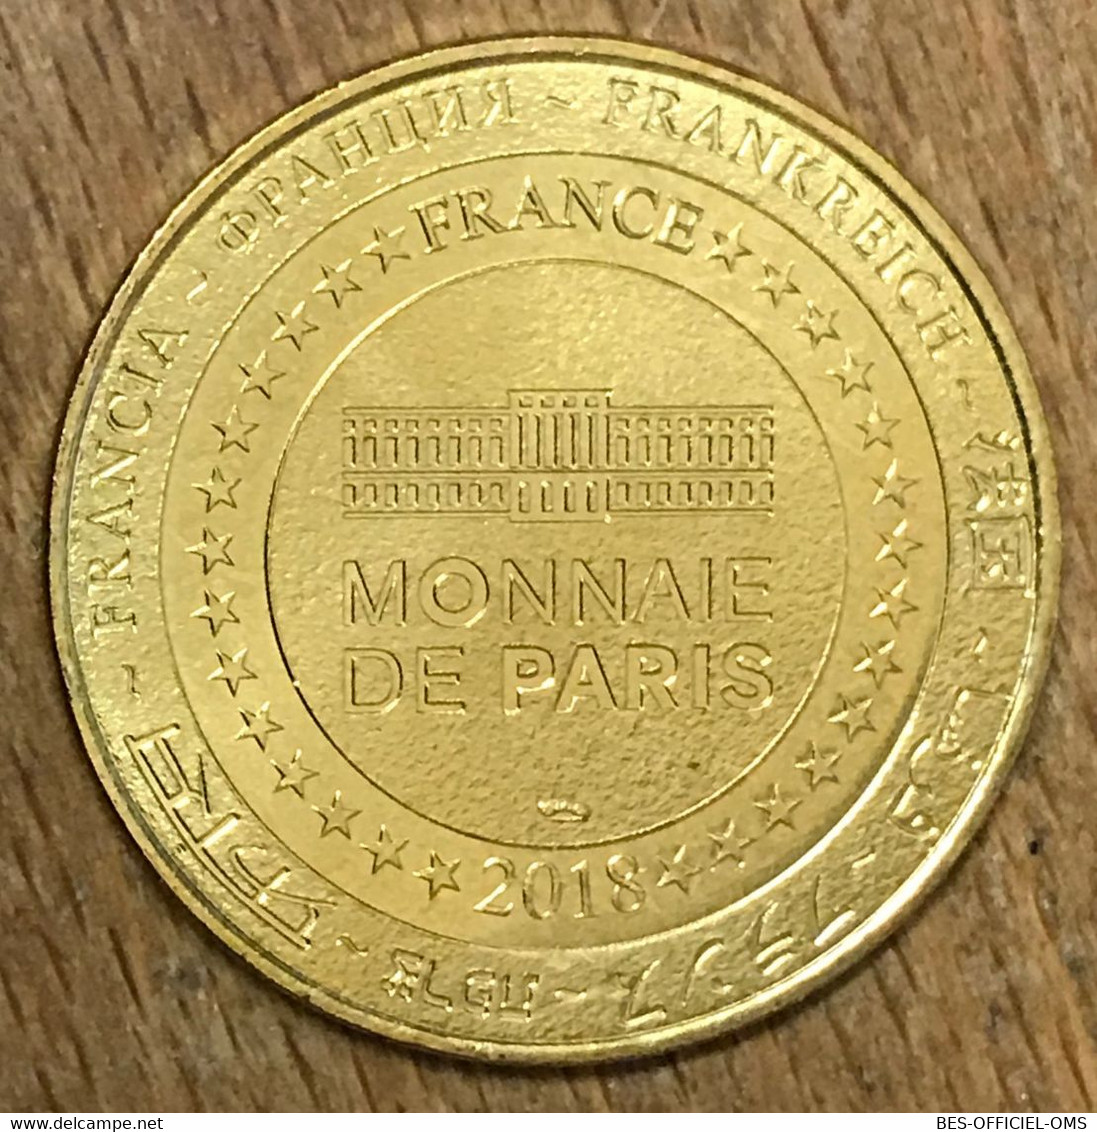 85 PUY DU FOU LE DERNIER PANACHE MDP 2018 MÉDAILLE MONNAIE DE PARIS JETON TOURISTIQUE MEDALS COINS TOKENS - 2018